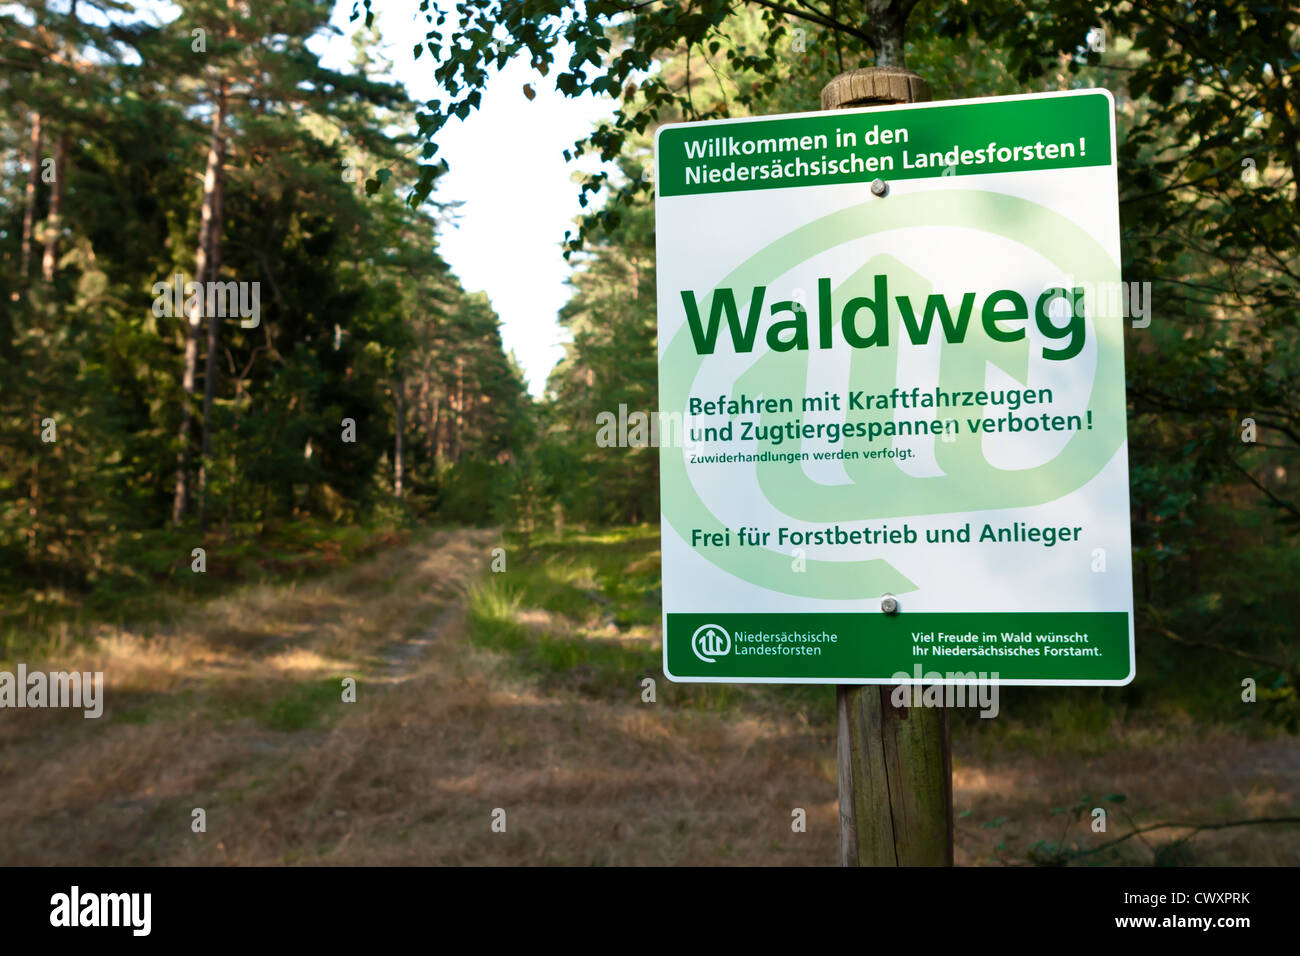 Waldweg in Niedersachsen, Forstschild Stock Photo - Alamy